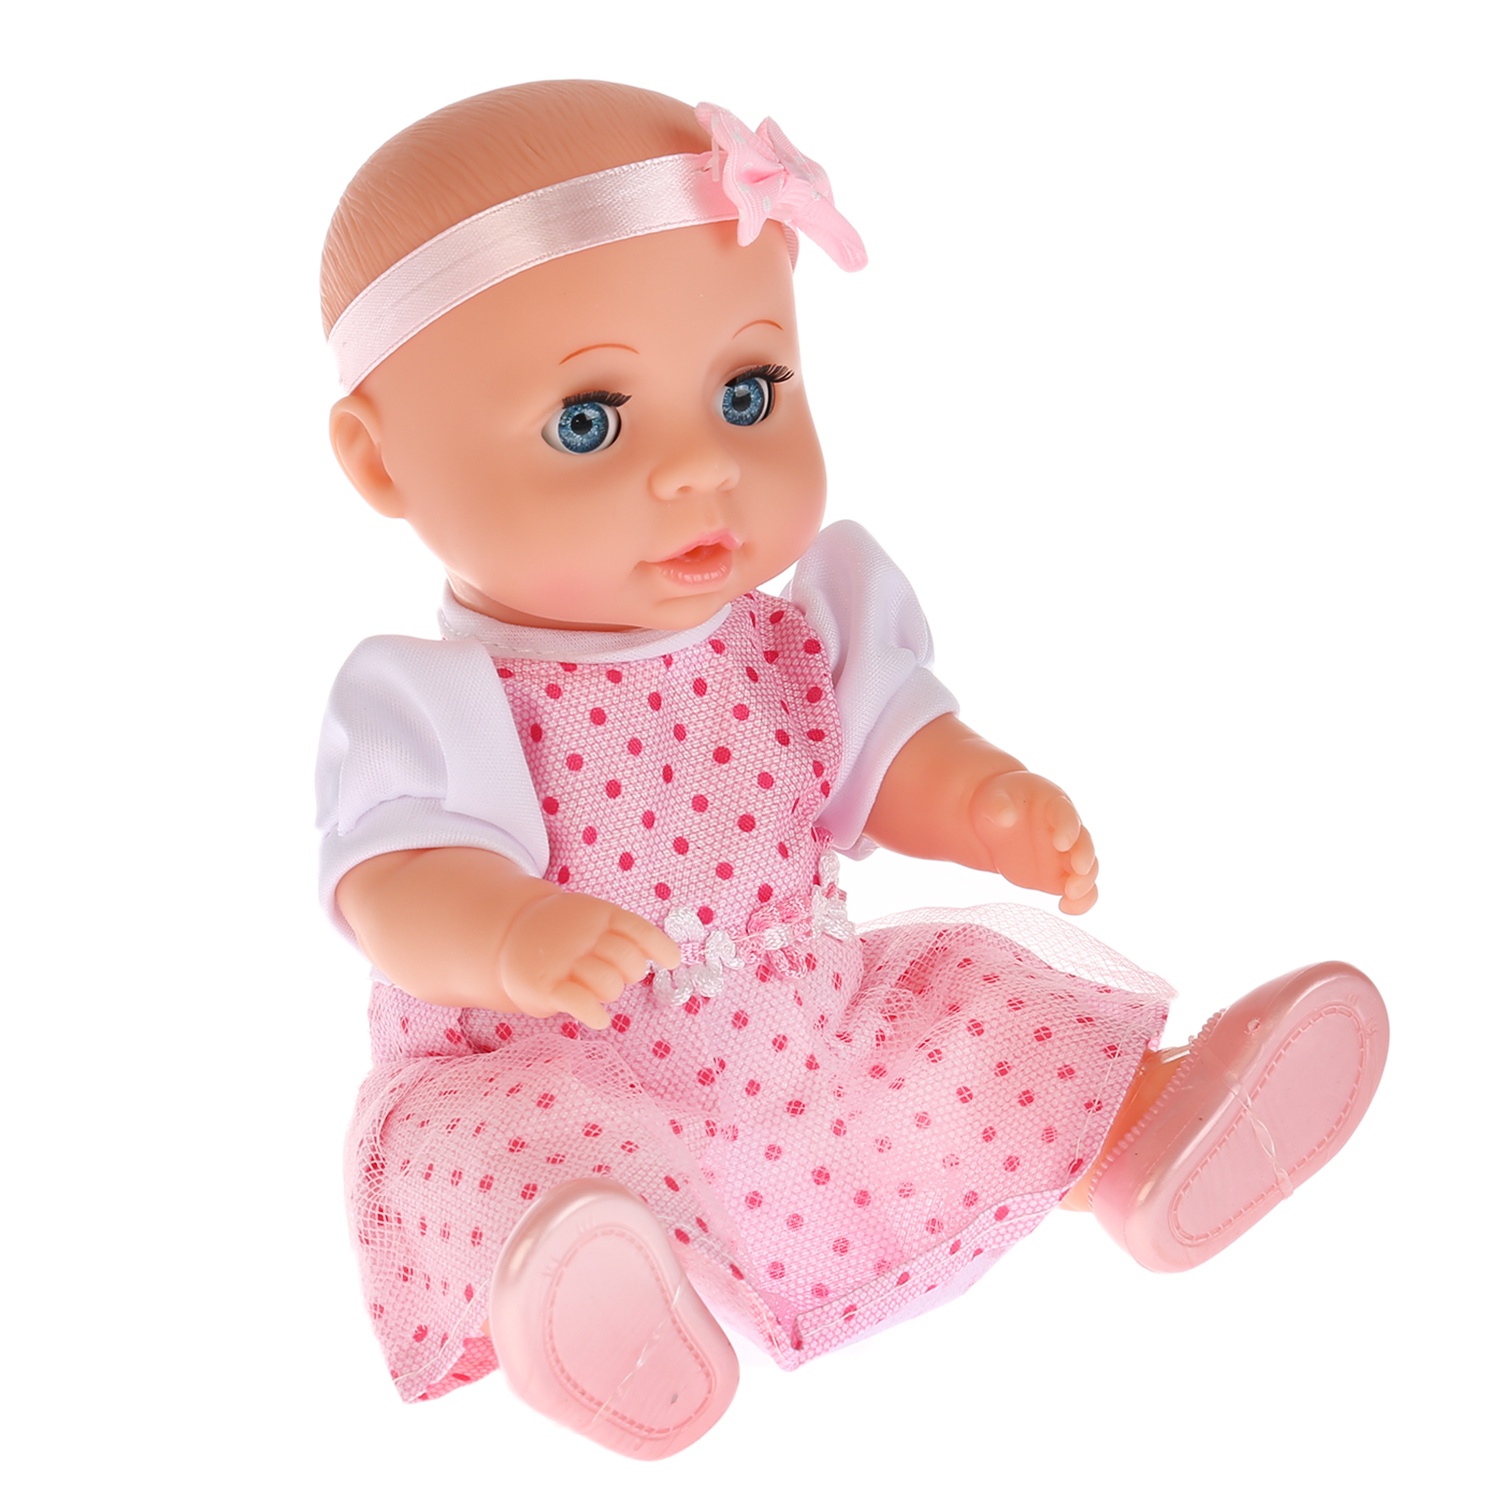 Пупс 20. Интерактивный пупс Карапуз, 20 см, y20dp-BB-ru. Карапузик кукла. Бупсы. Резиновые куклы для детей.